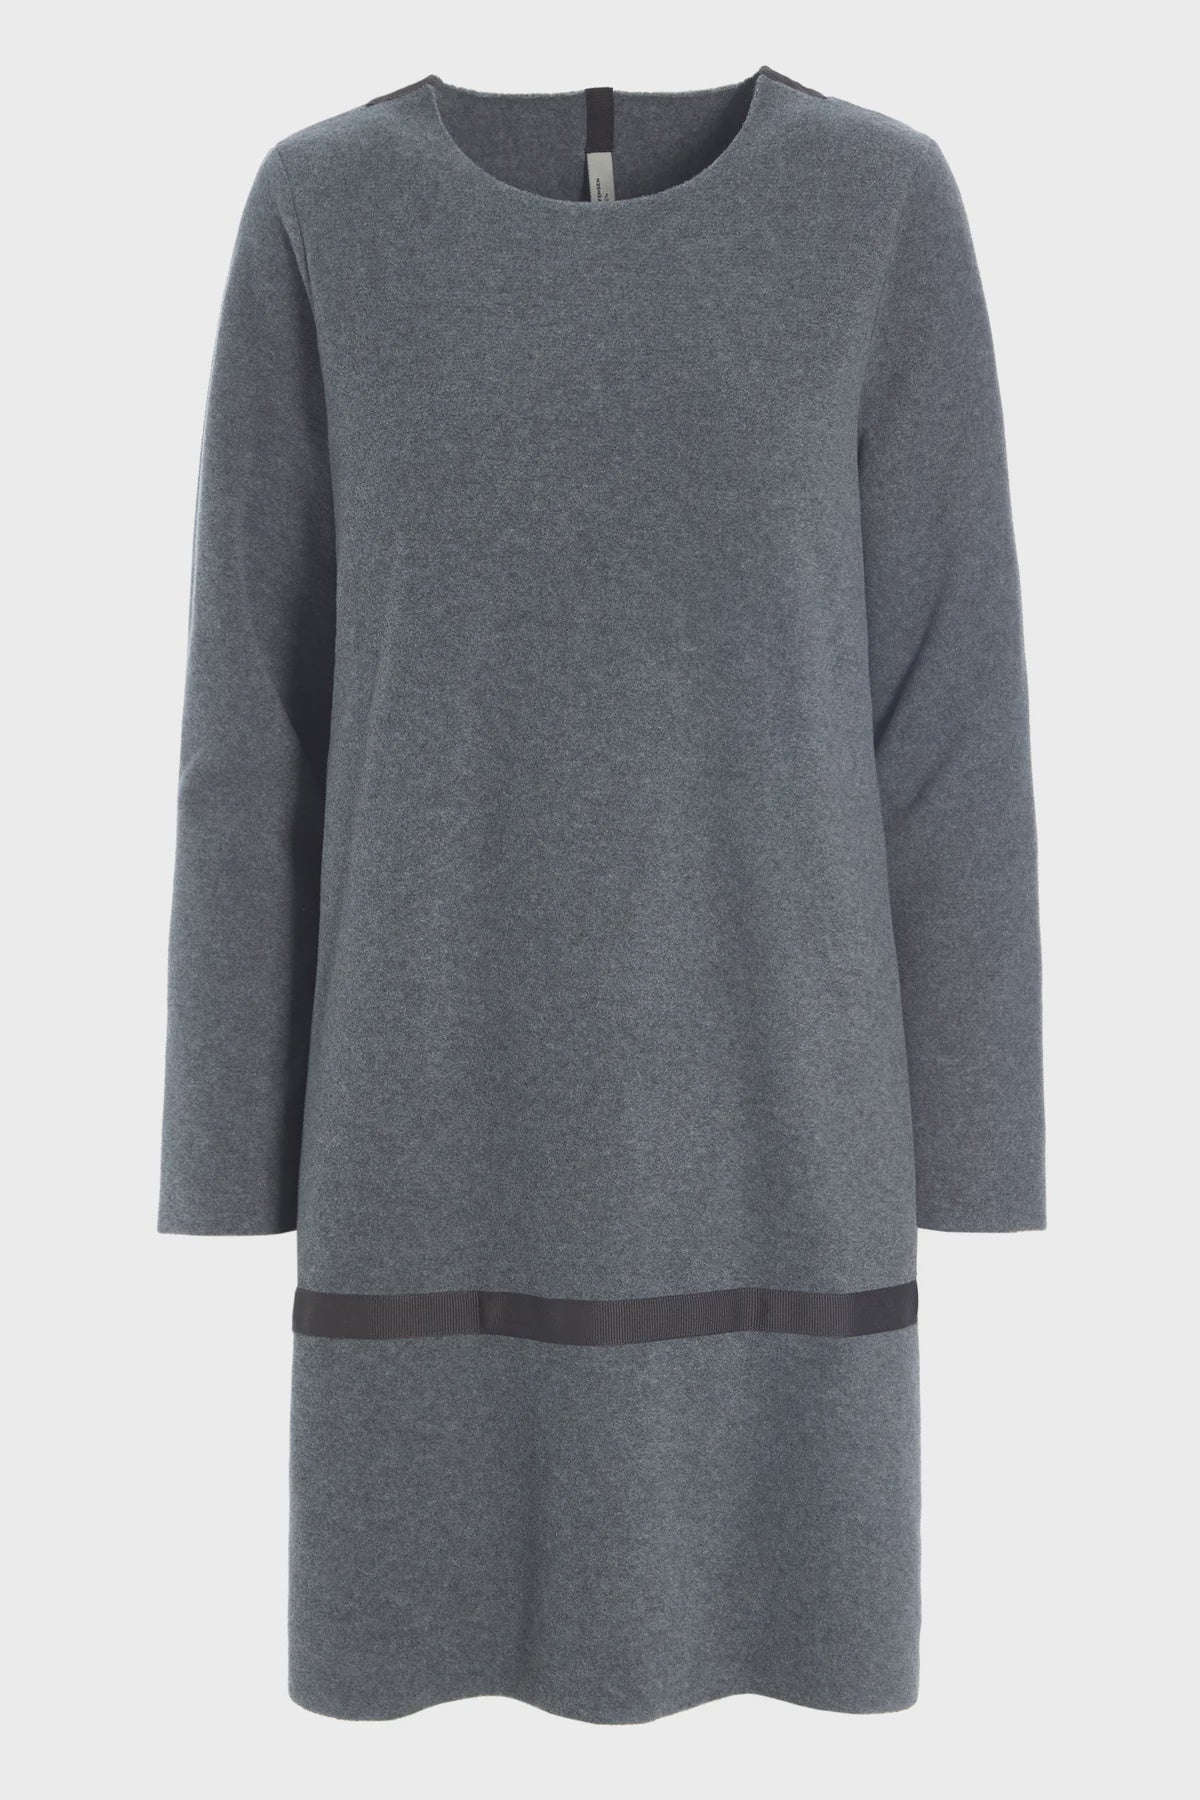 Henriette Steffensen Fleece Dress in Grey-Women-Ohh! By Gum - Shop Sustainable